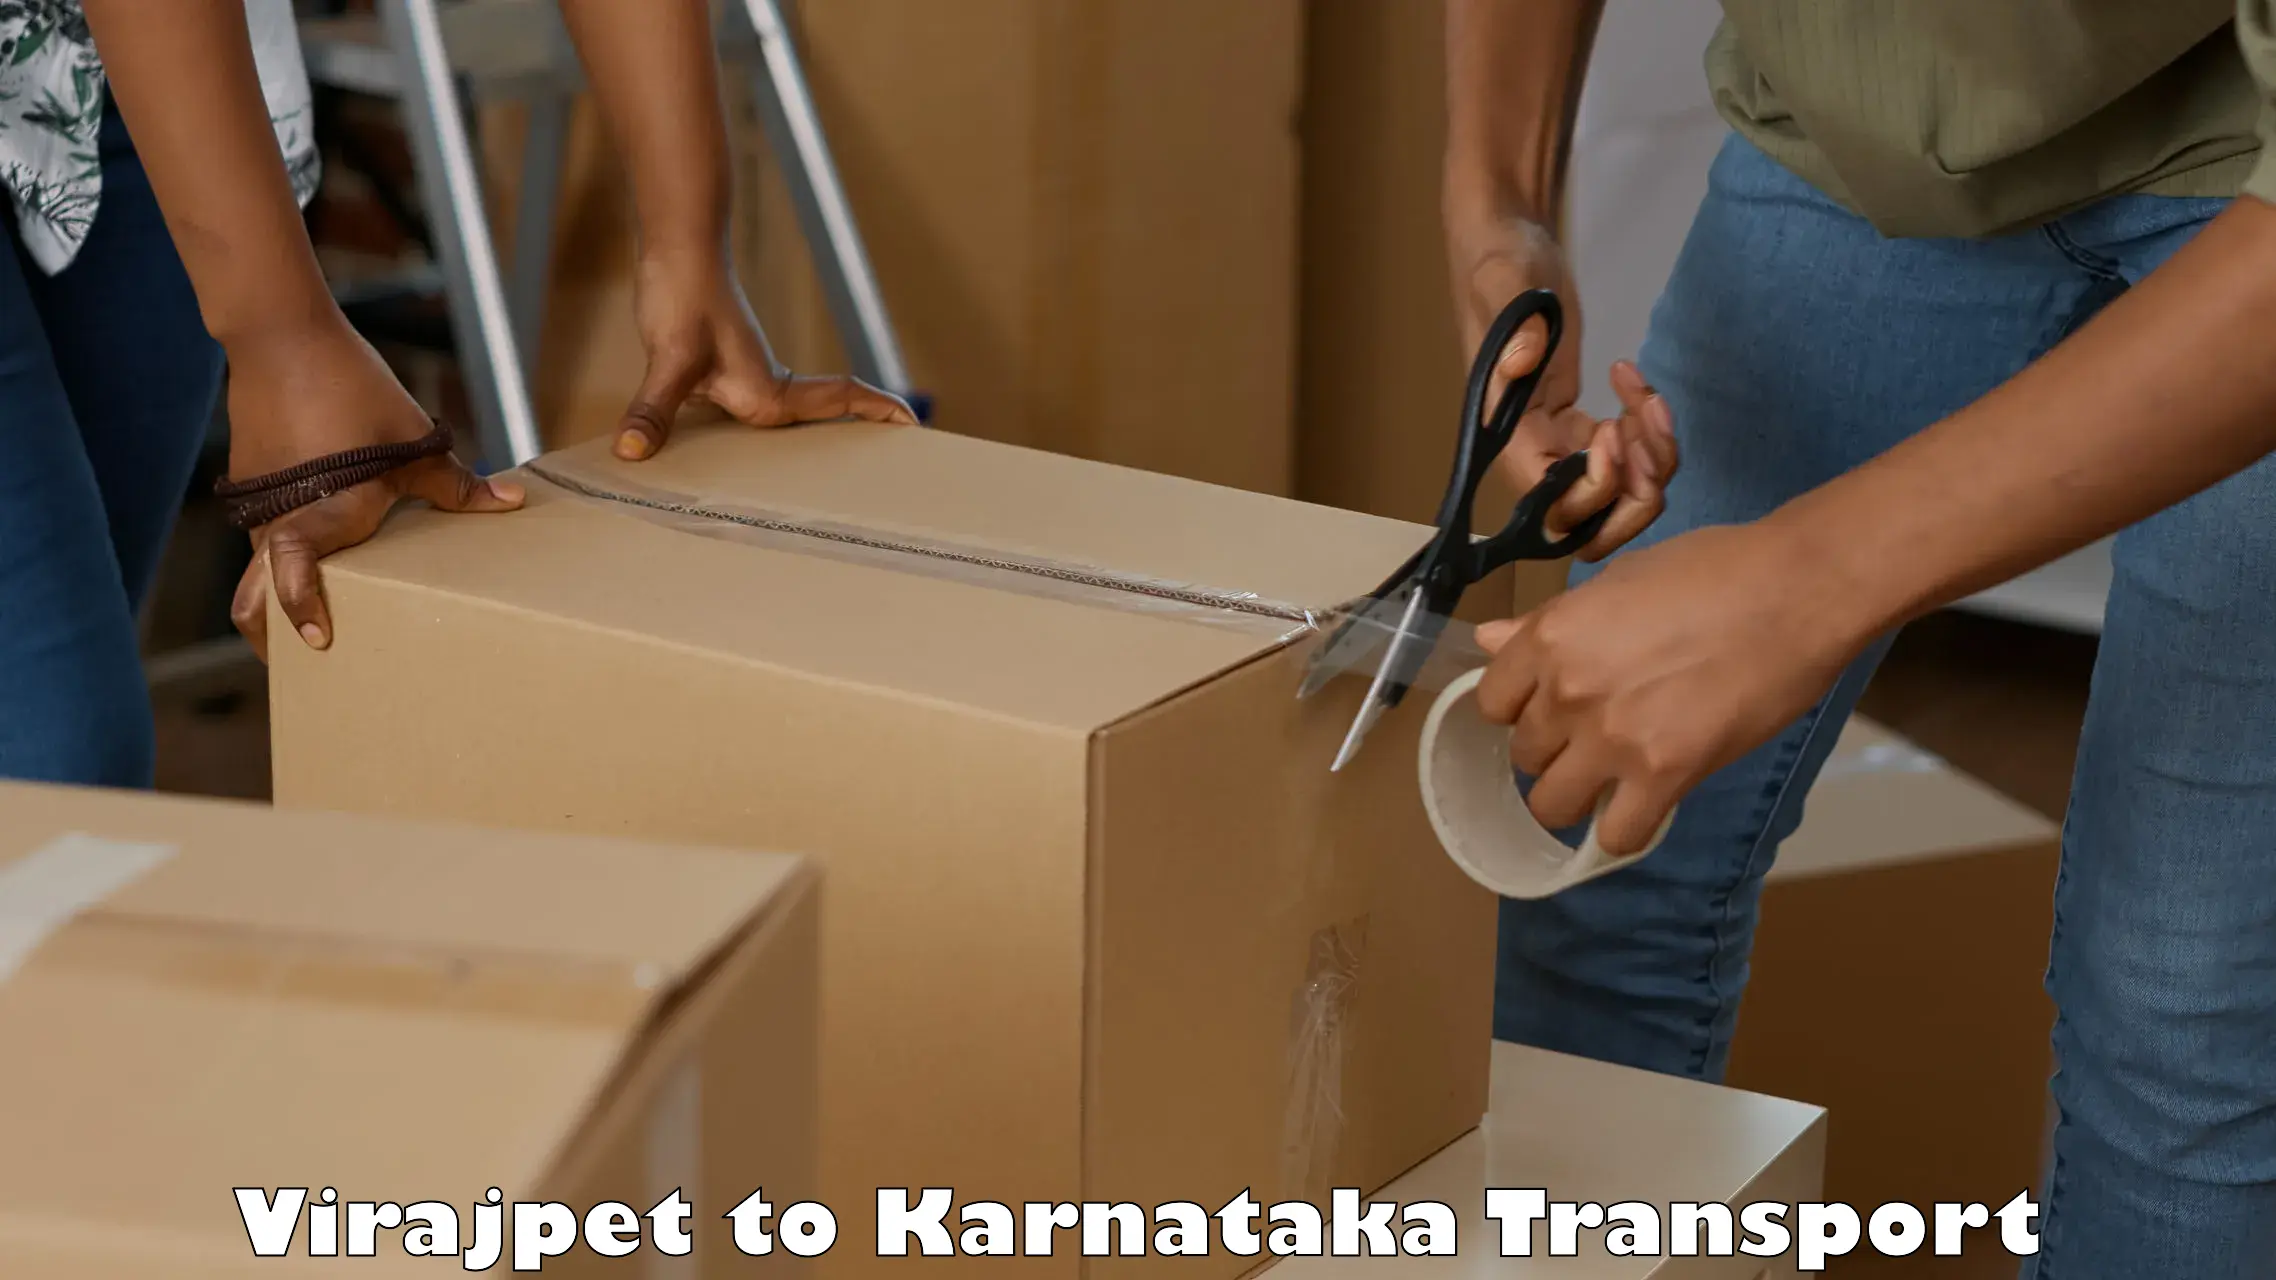 Air freight transport services Virajpet to Kanjarakatte